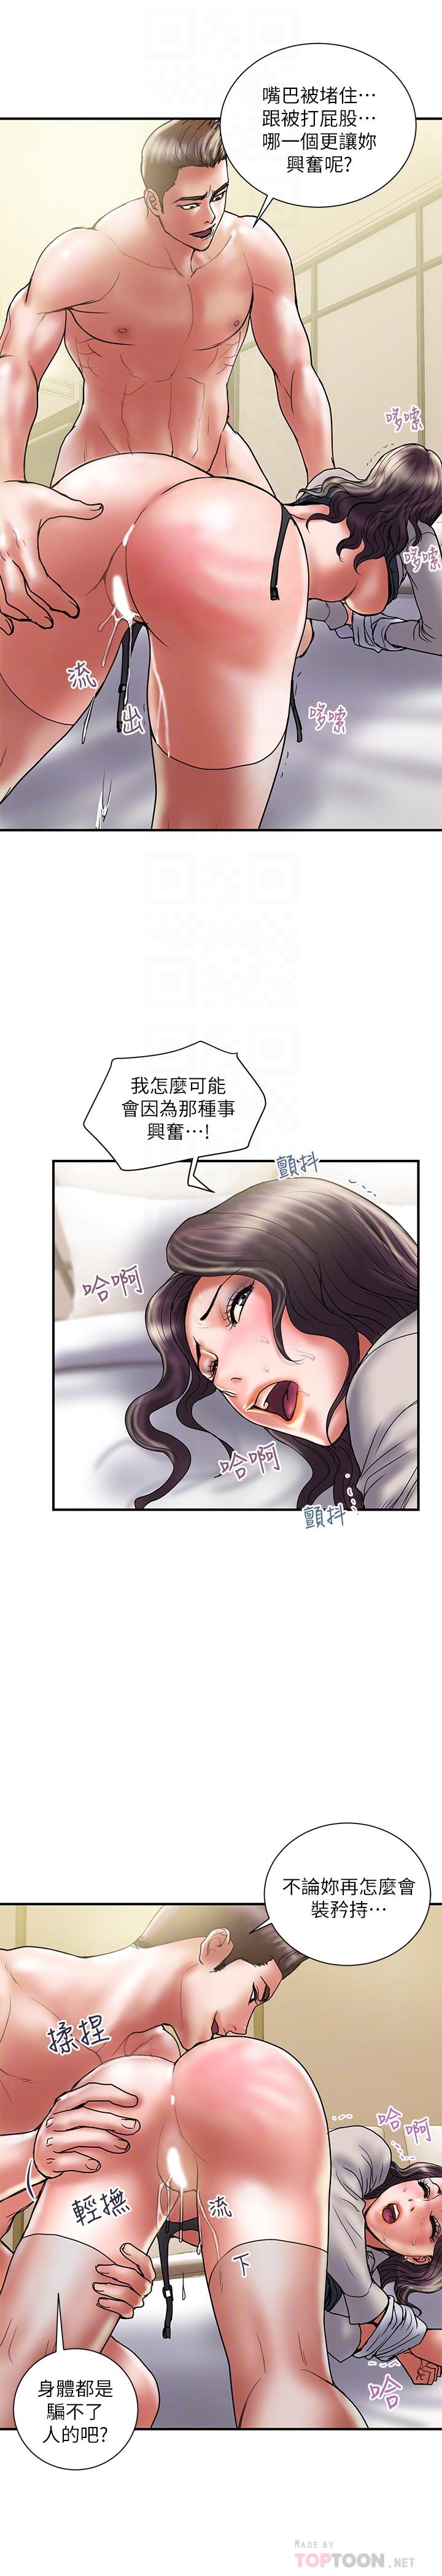 韩国污漫画 計劃出軌 第37话-屈辱与快感交错 8